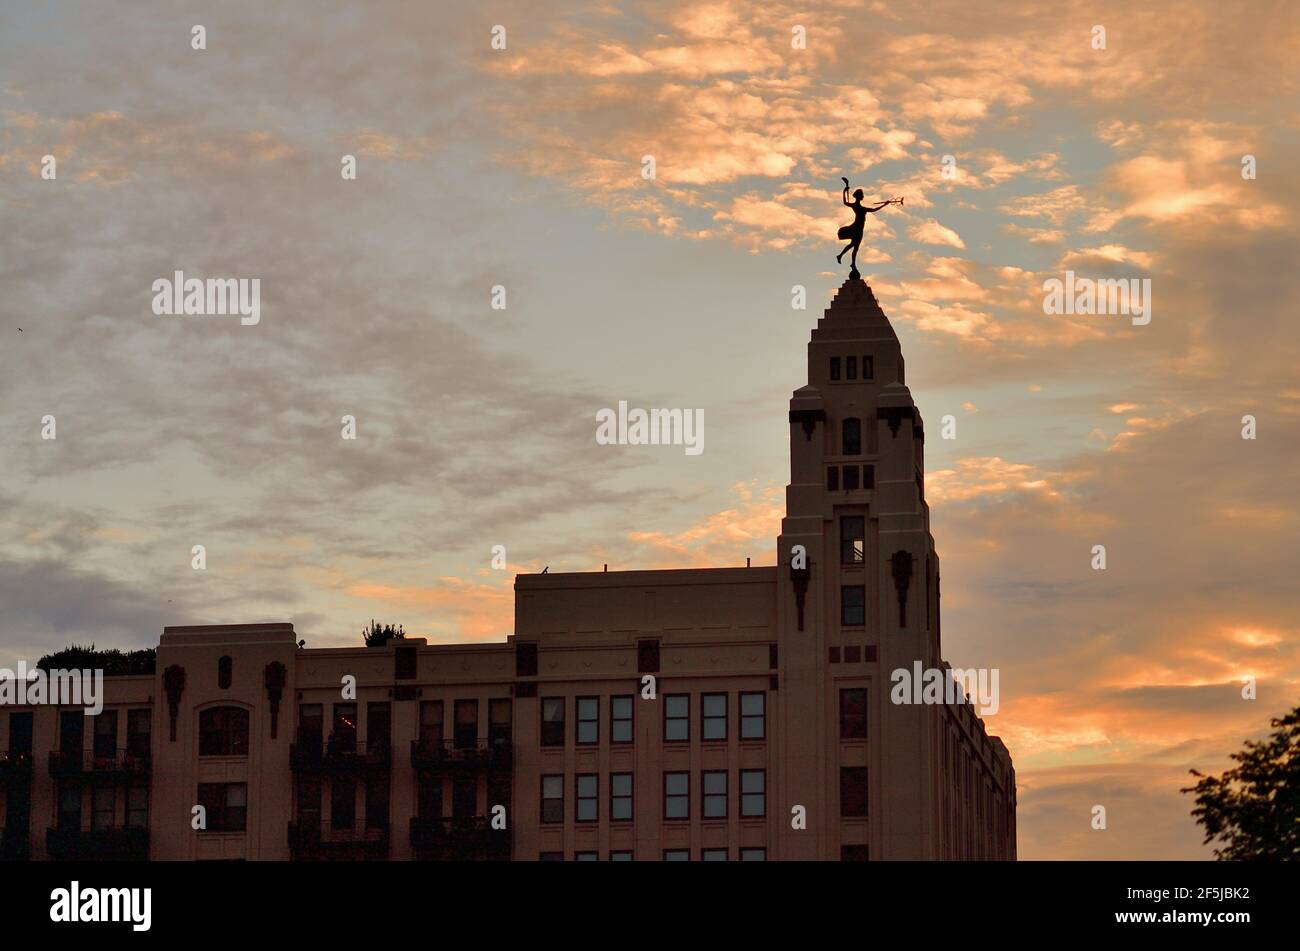 Chicago, Illinois, Stati Uniti. La statua in cima all'edificio amministrativo del complesso di Montgomery Ward è illuminata come una silhouette dal sole che tramonta. Foto Stock